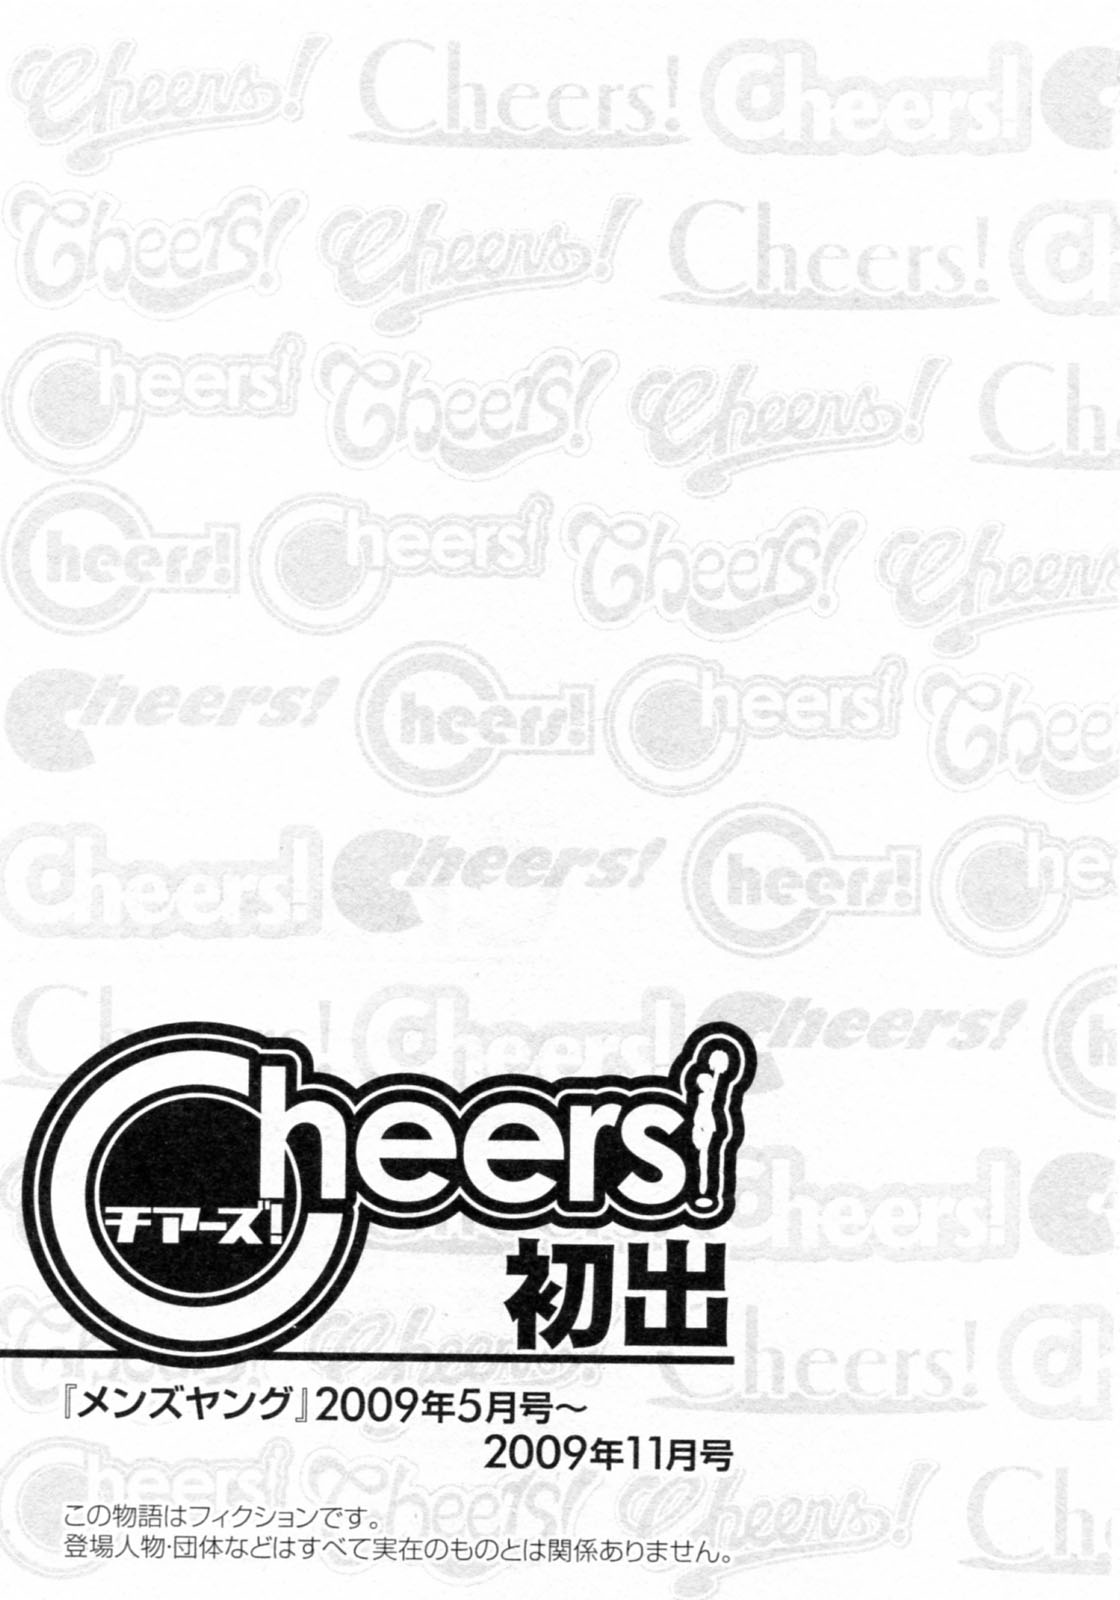 [Charlie Nishinaka] Cheers! 08 